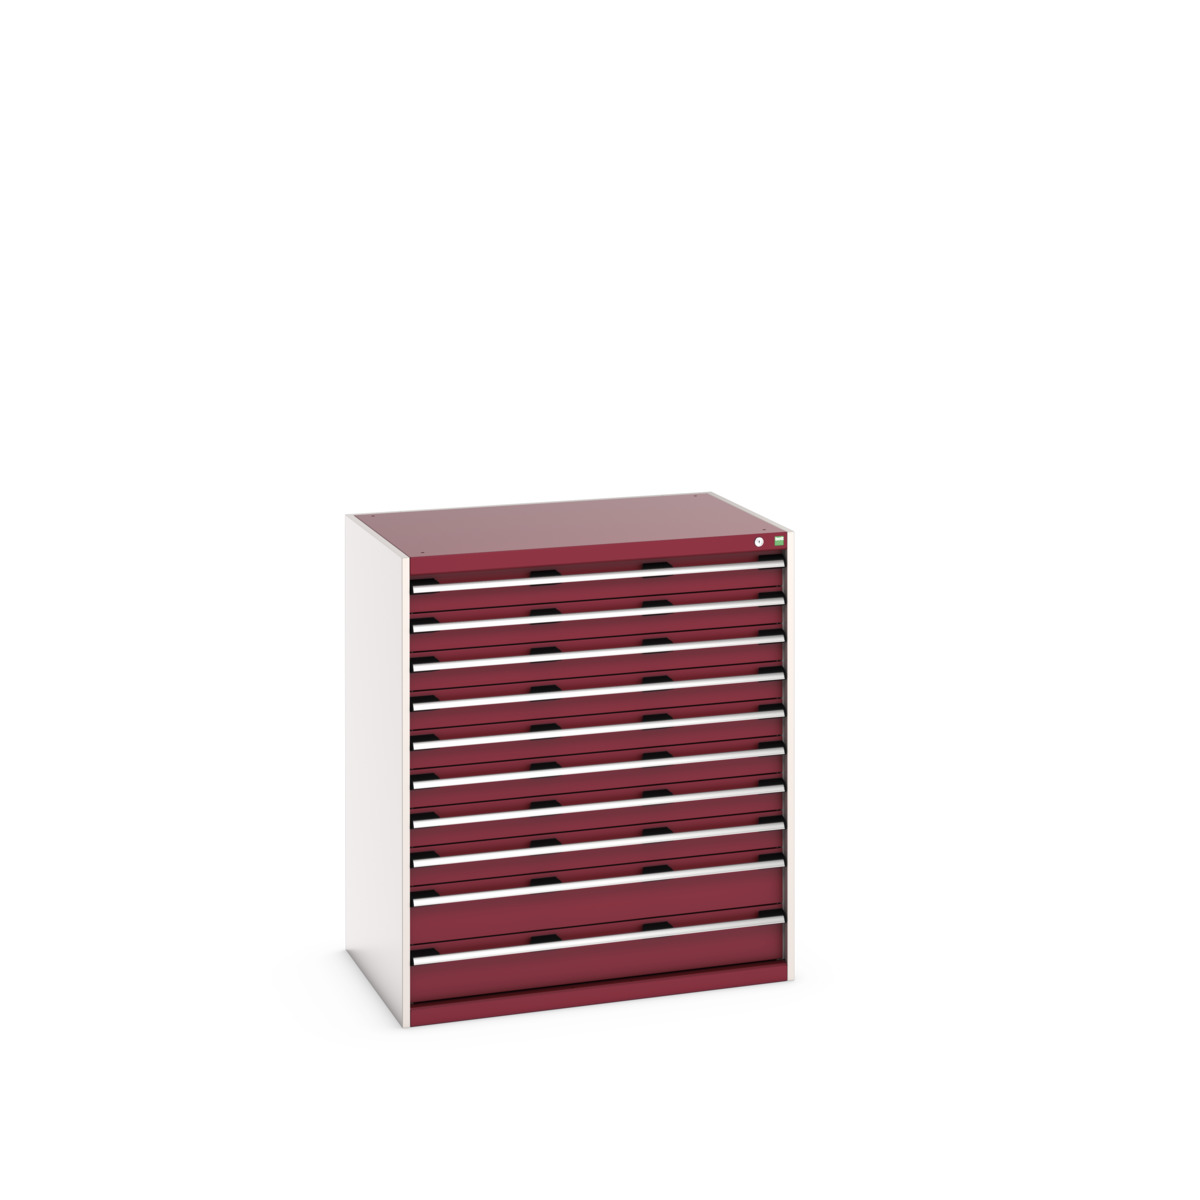 40029033.24V - cubio drawer cabinet